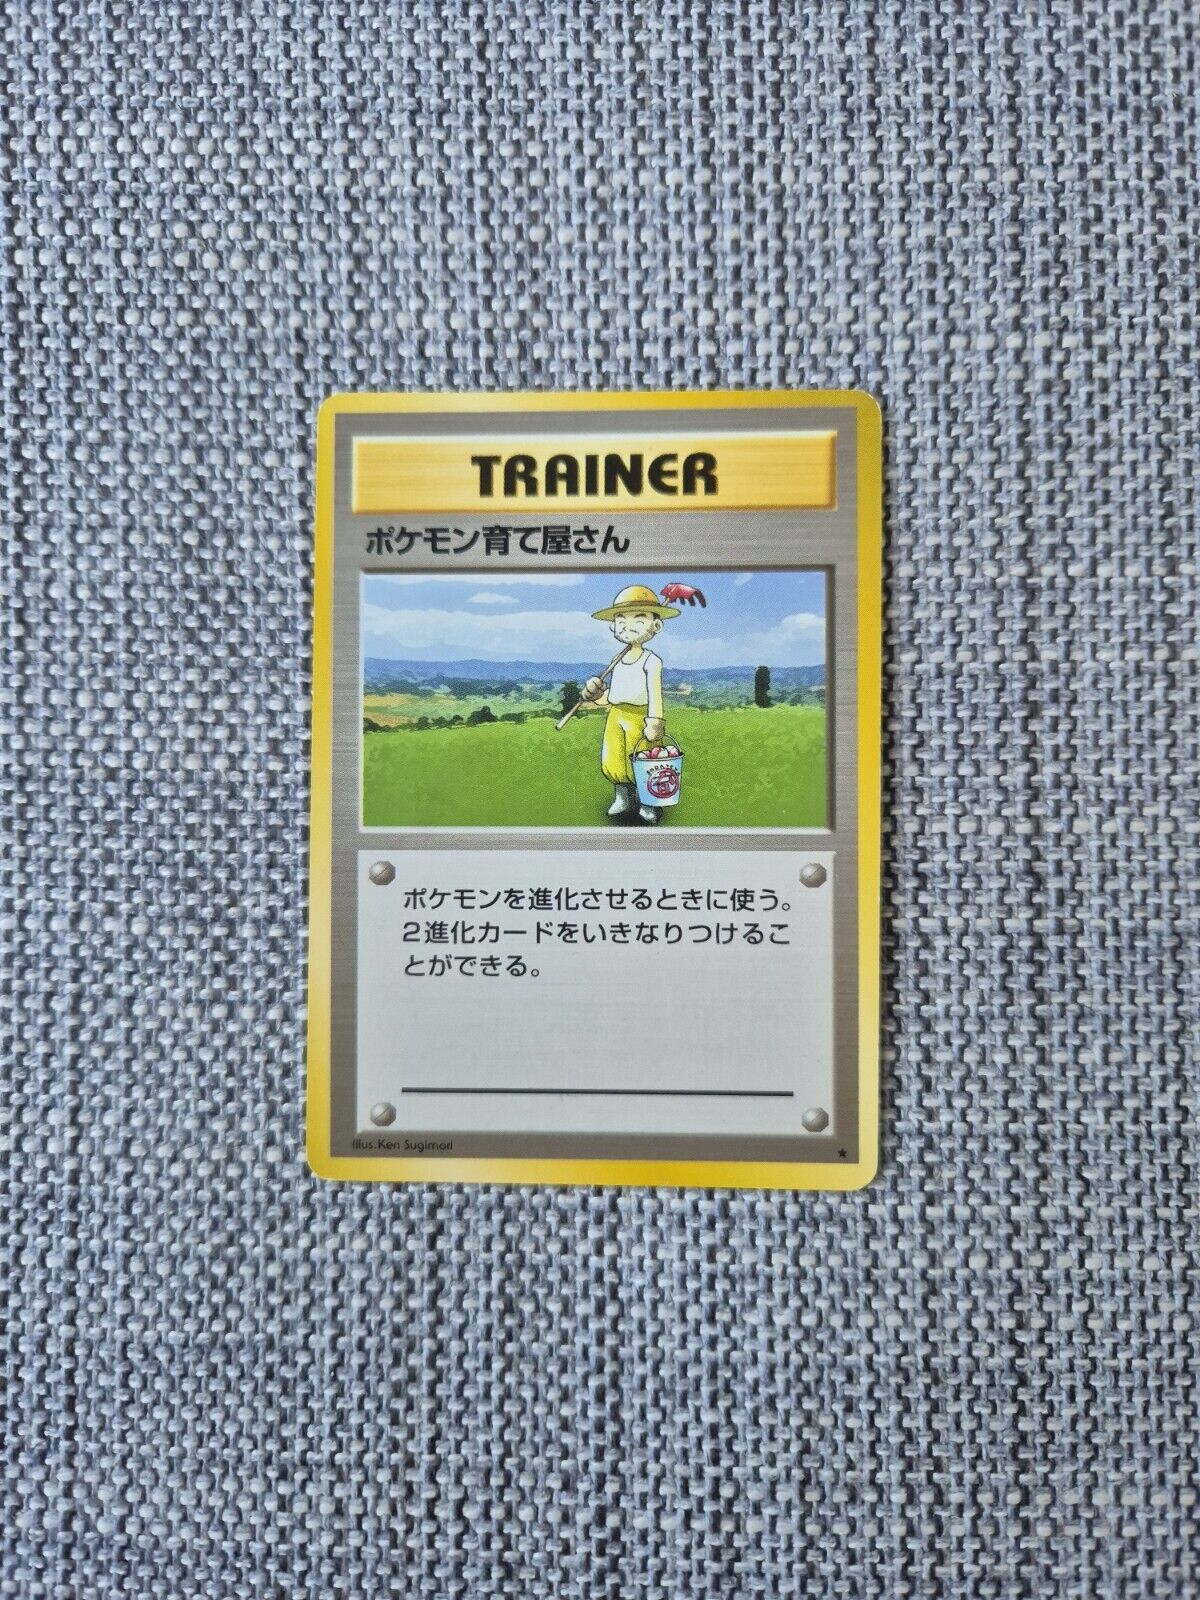 Pokemon Breeder Rare Base Set Trainer Japanese Pokemon Card